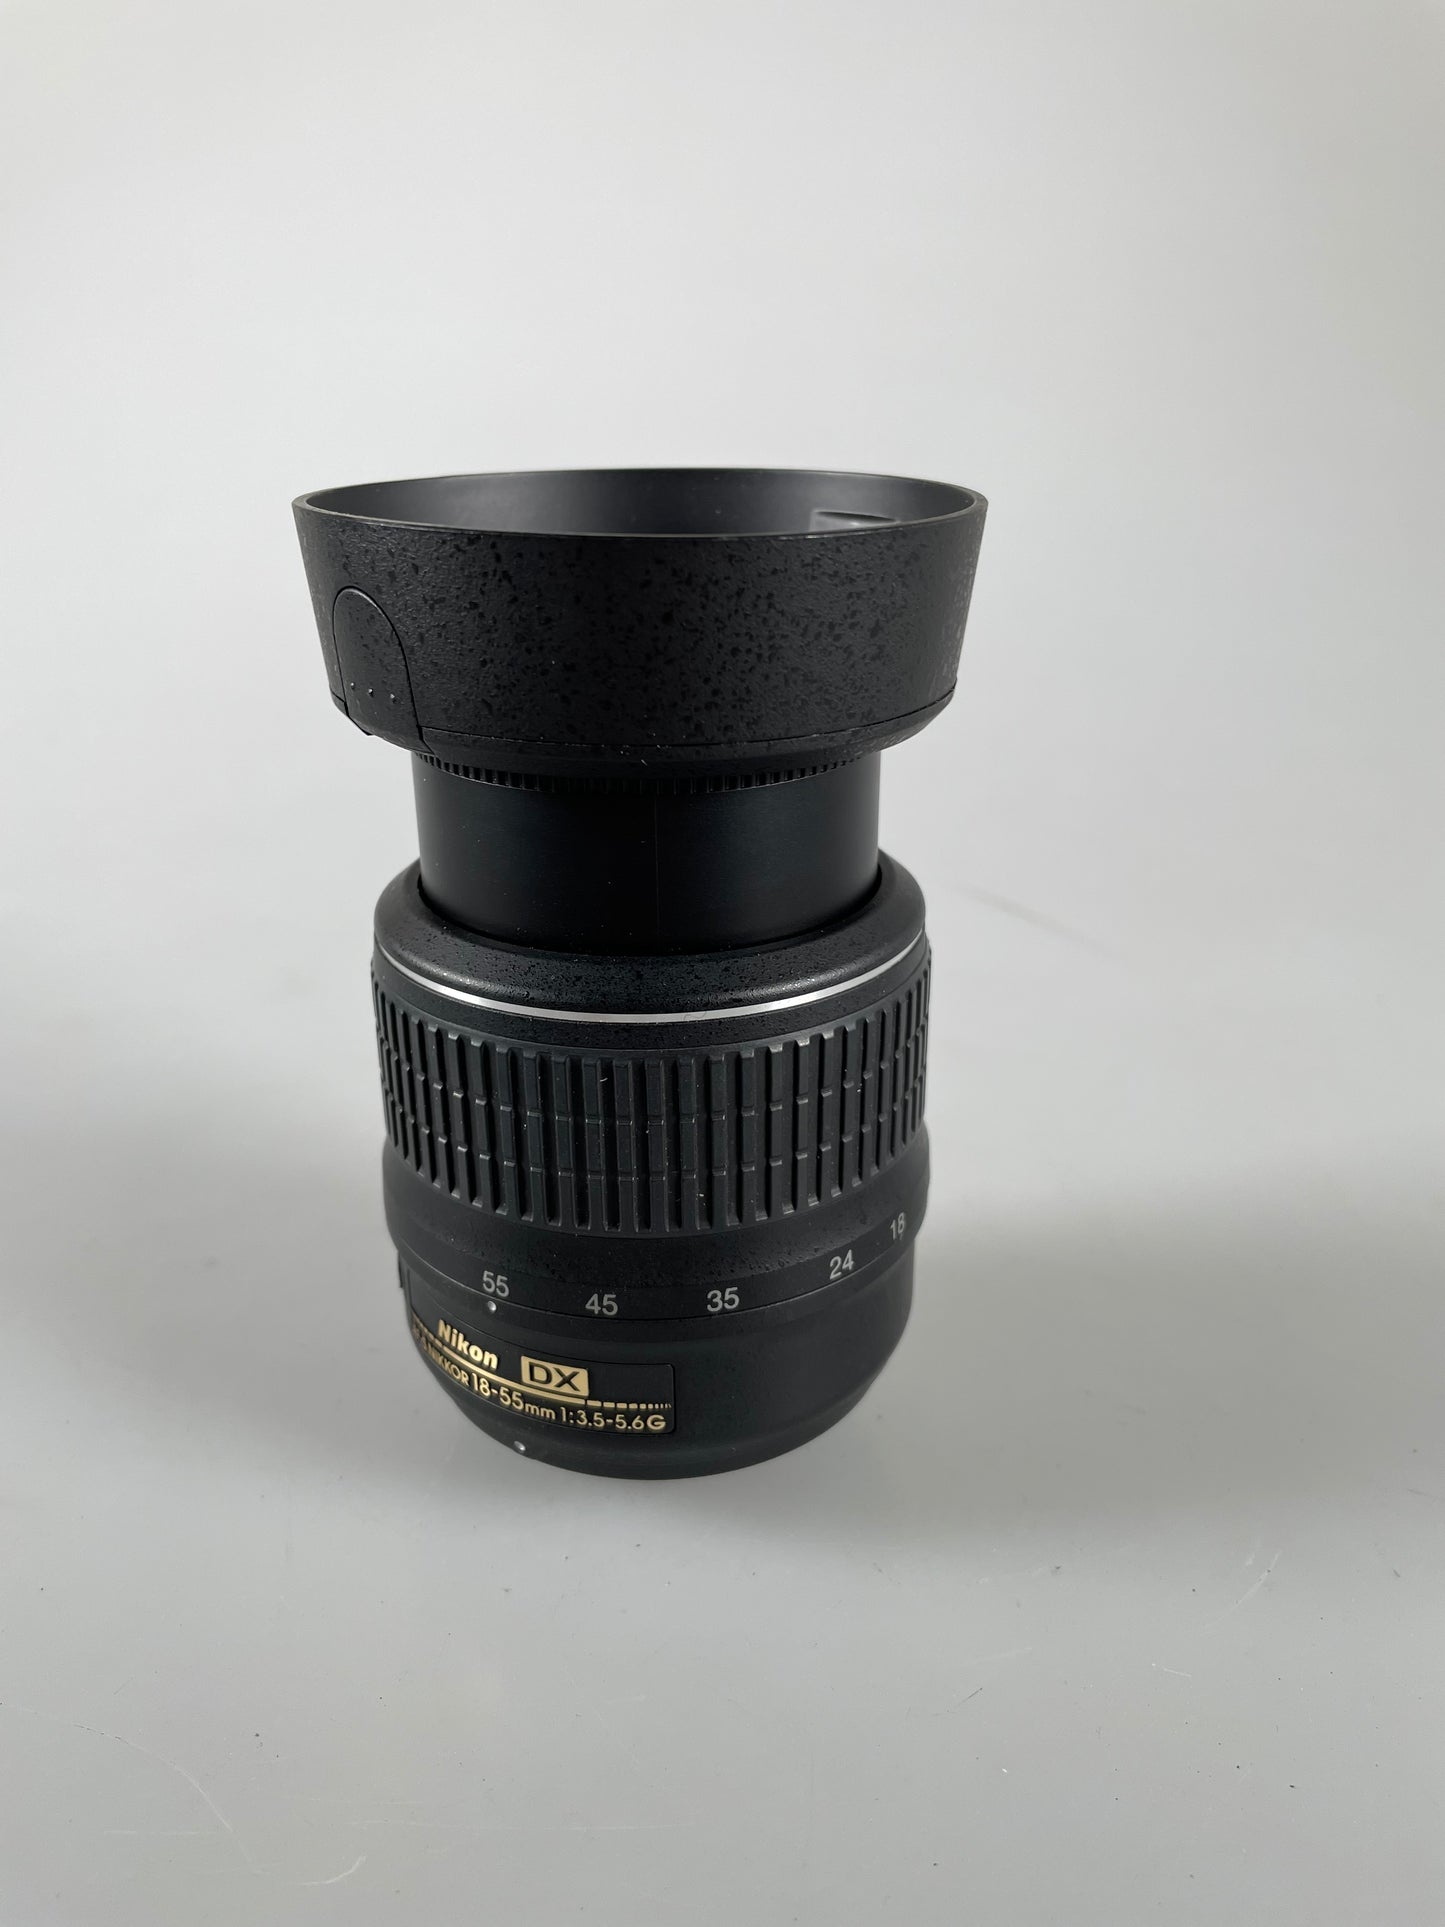 Nikon NIKKOR 18-55mm F3.5-5.6 II AF-S VR DX Lens